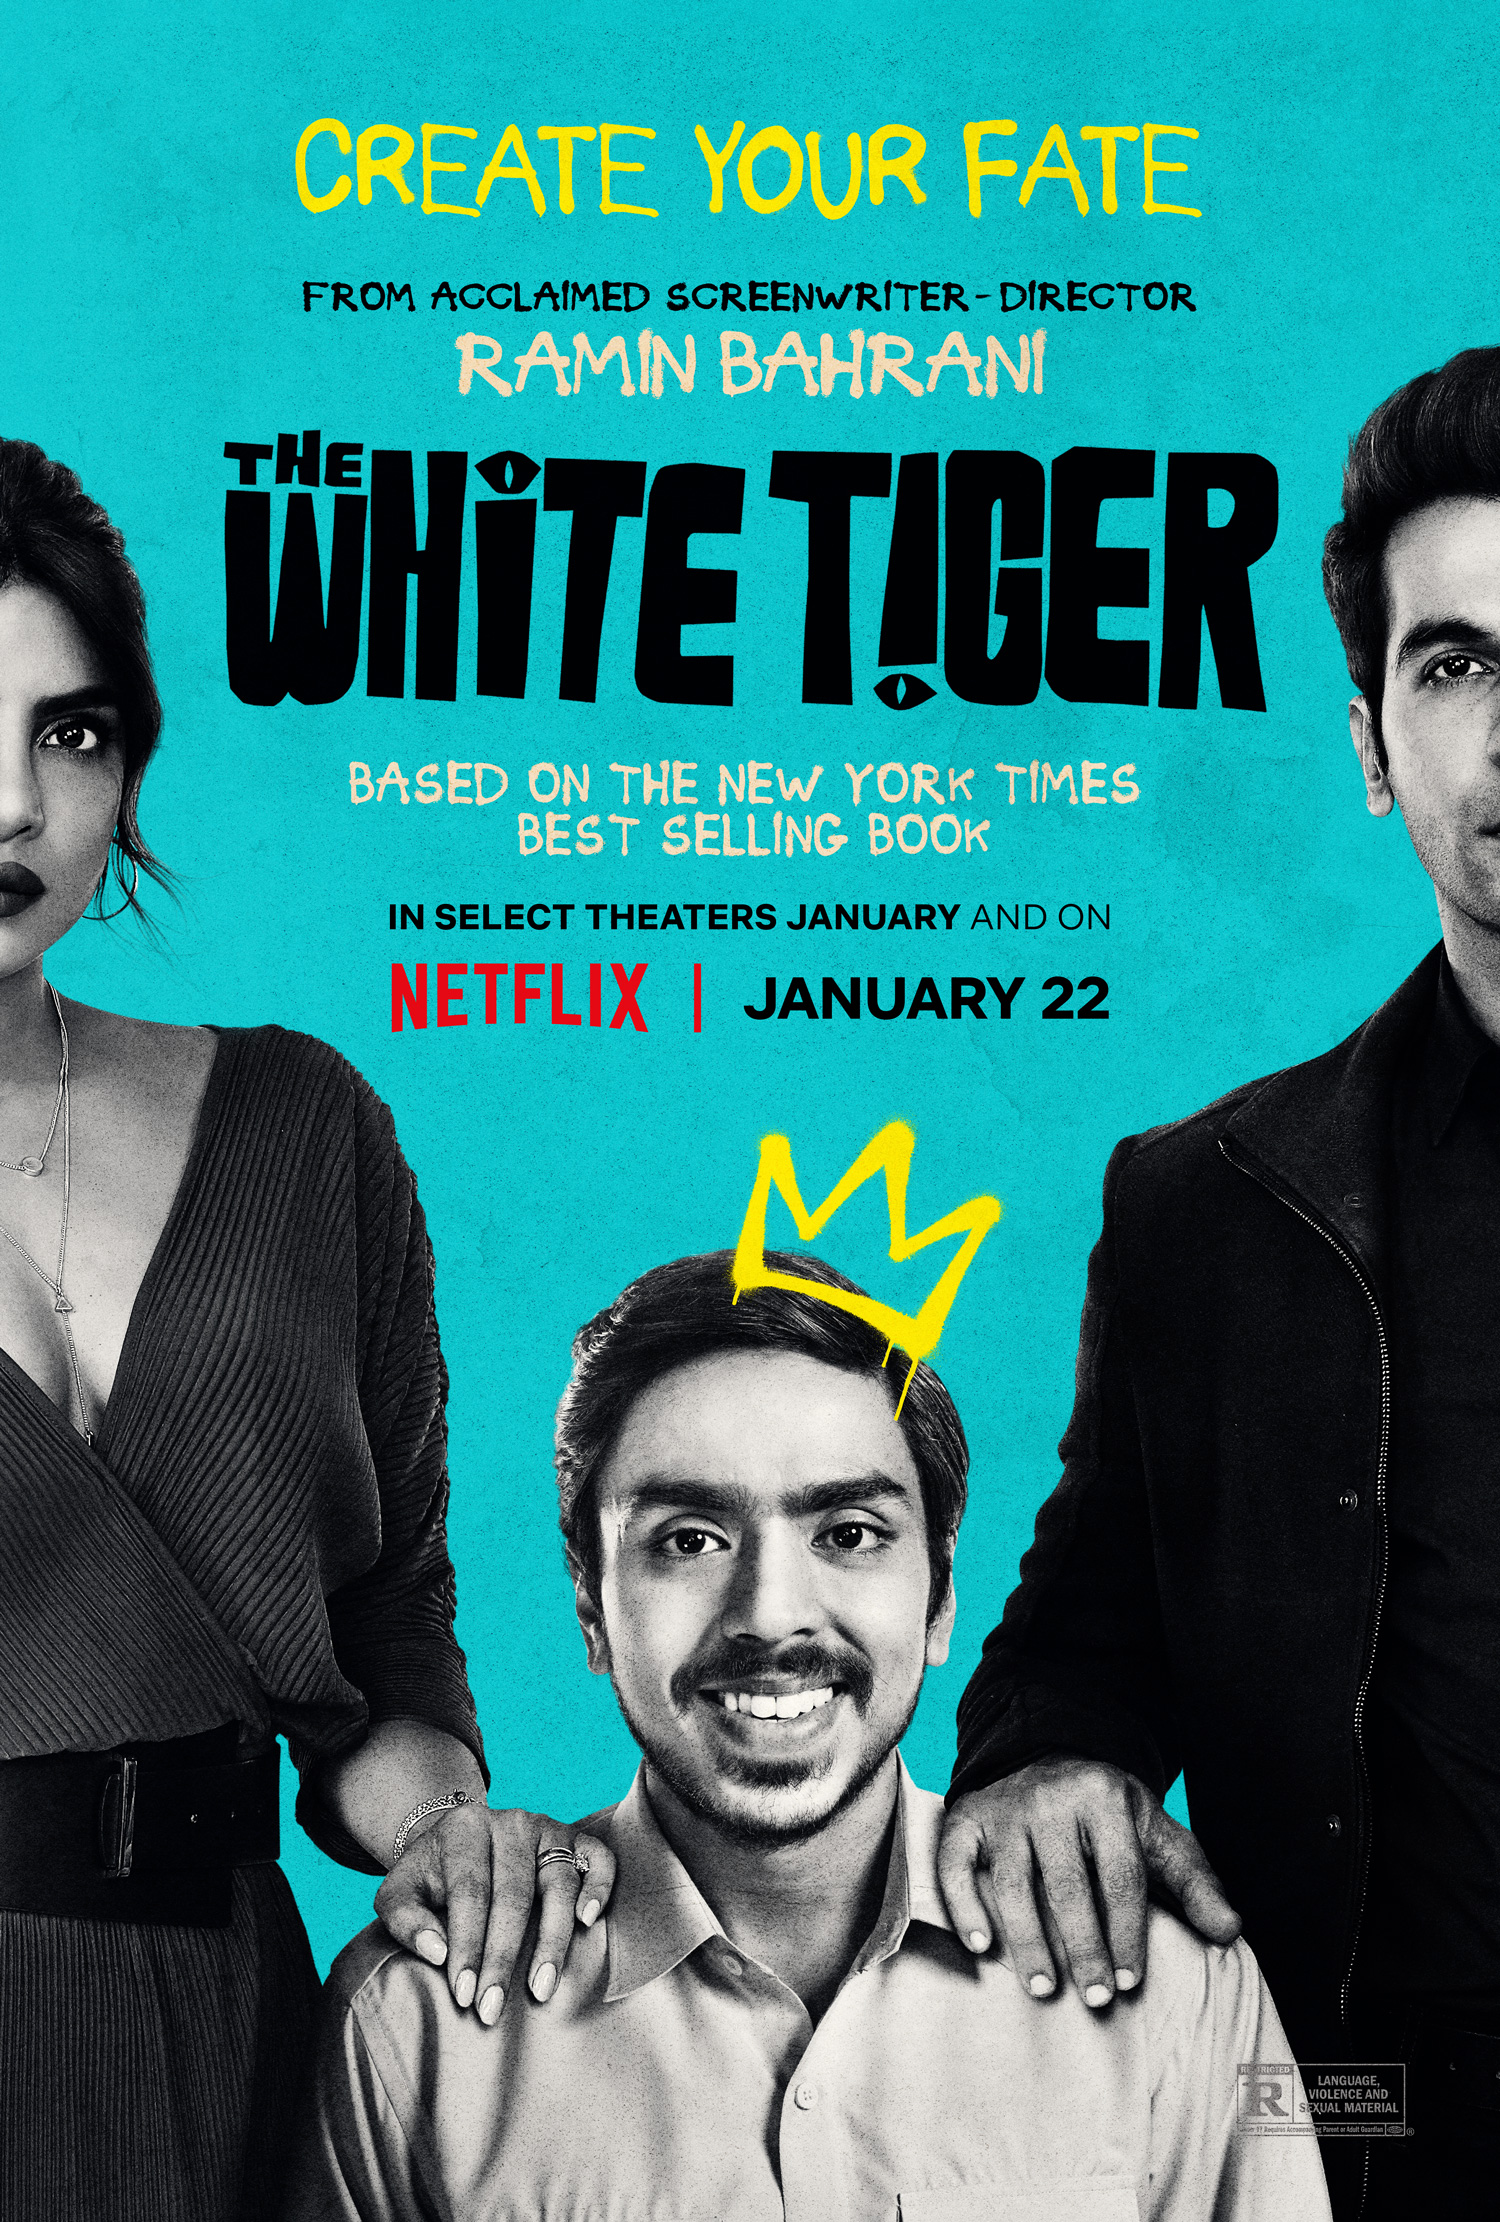 [รีวิว] The White Tiger: ไก่ผู้ตรัสรู้กลายเป็นเสือ